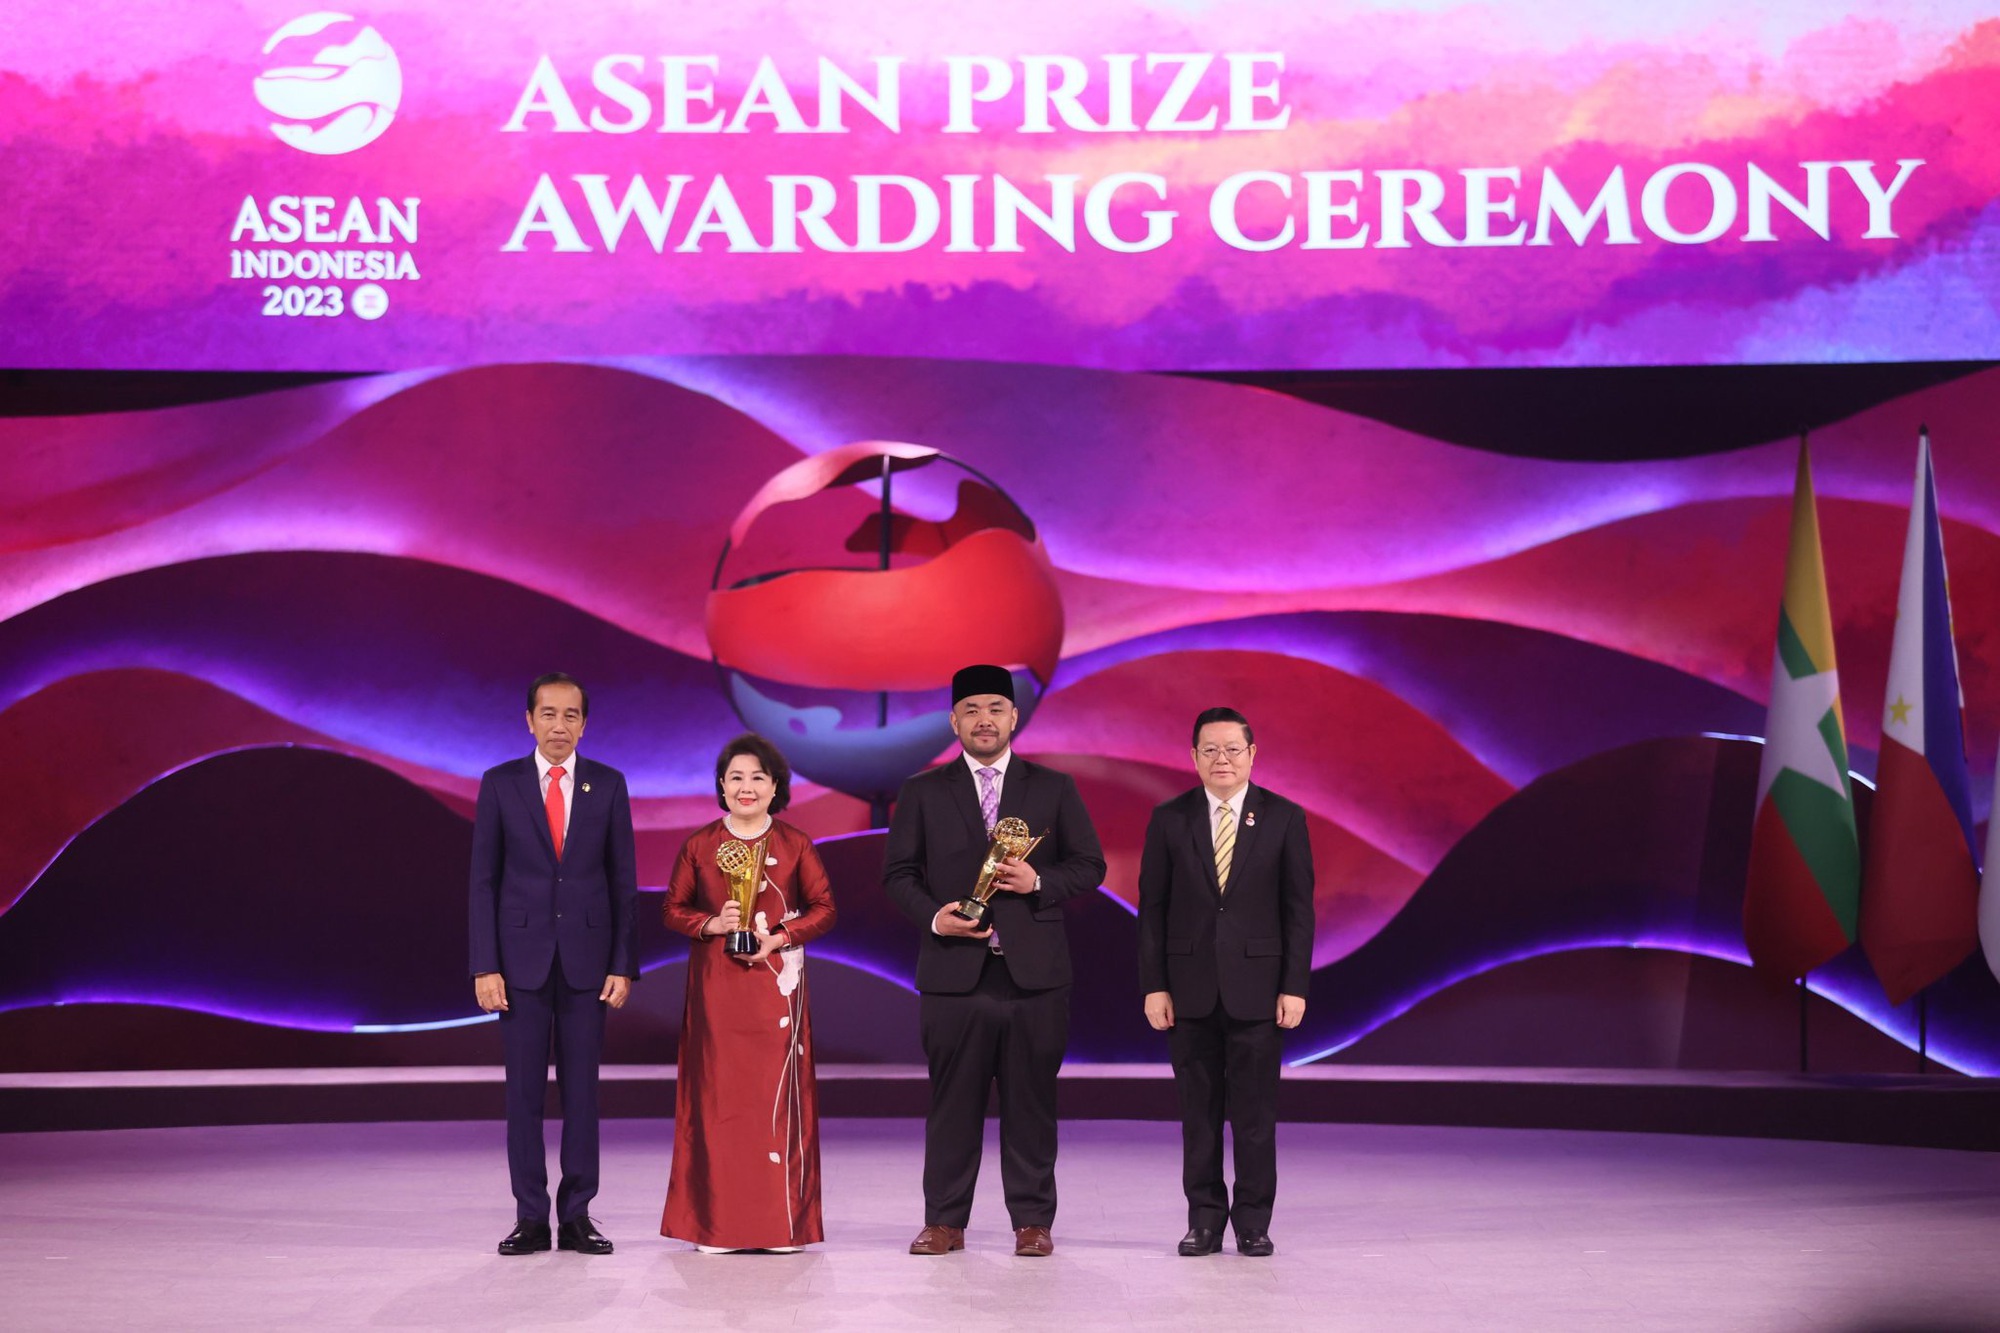 Khẳng định một ASEAN đoàn kết, tầm vóc và hợp tác